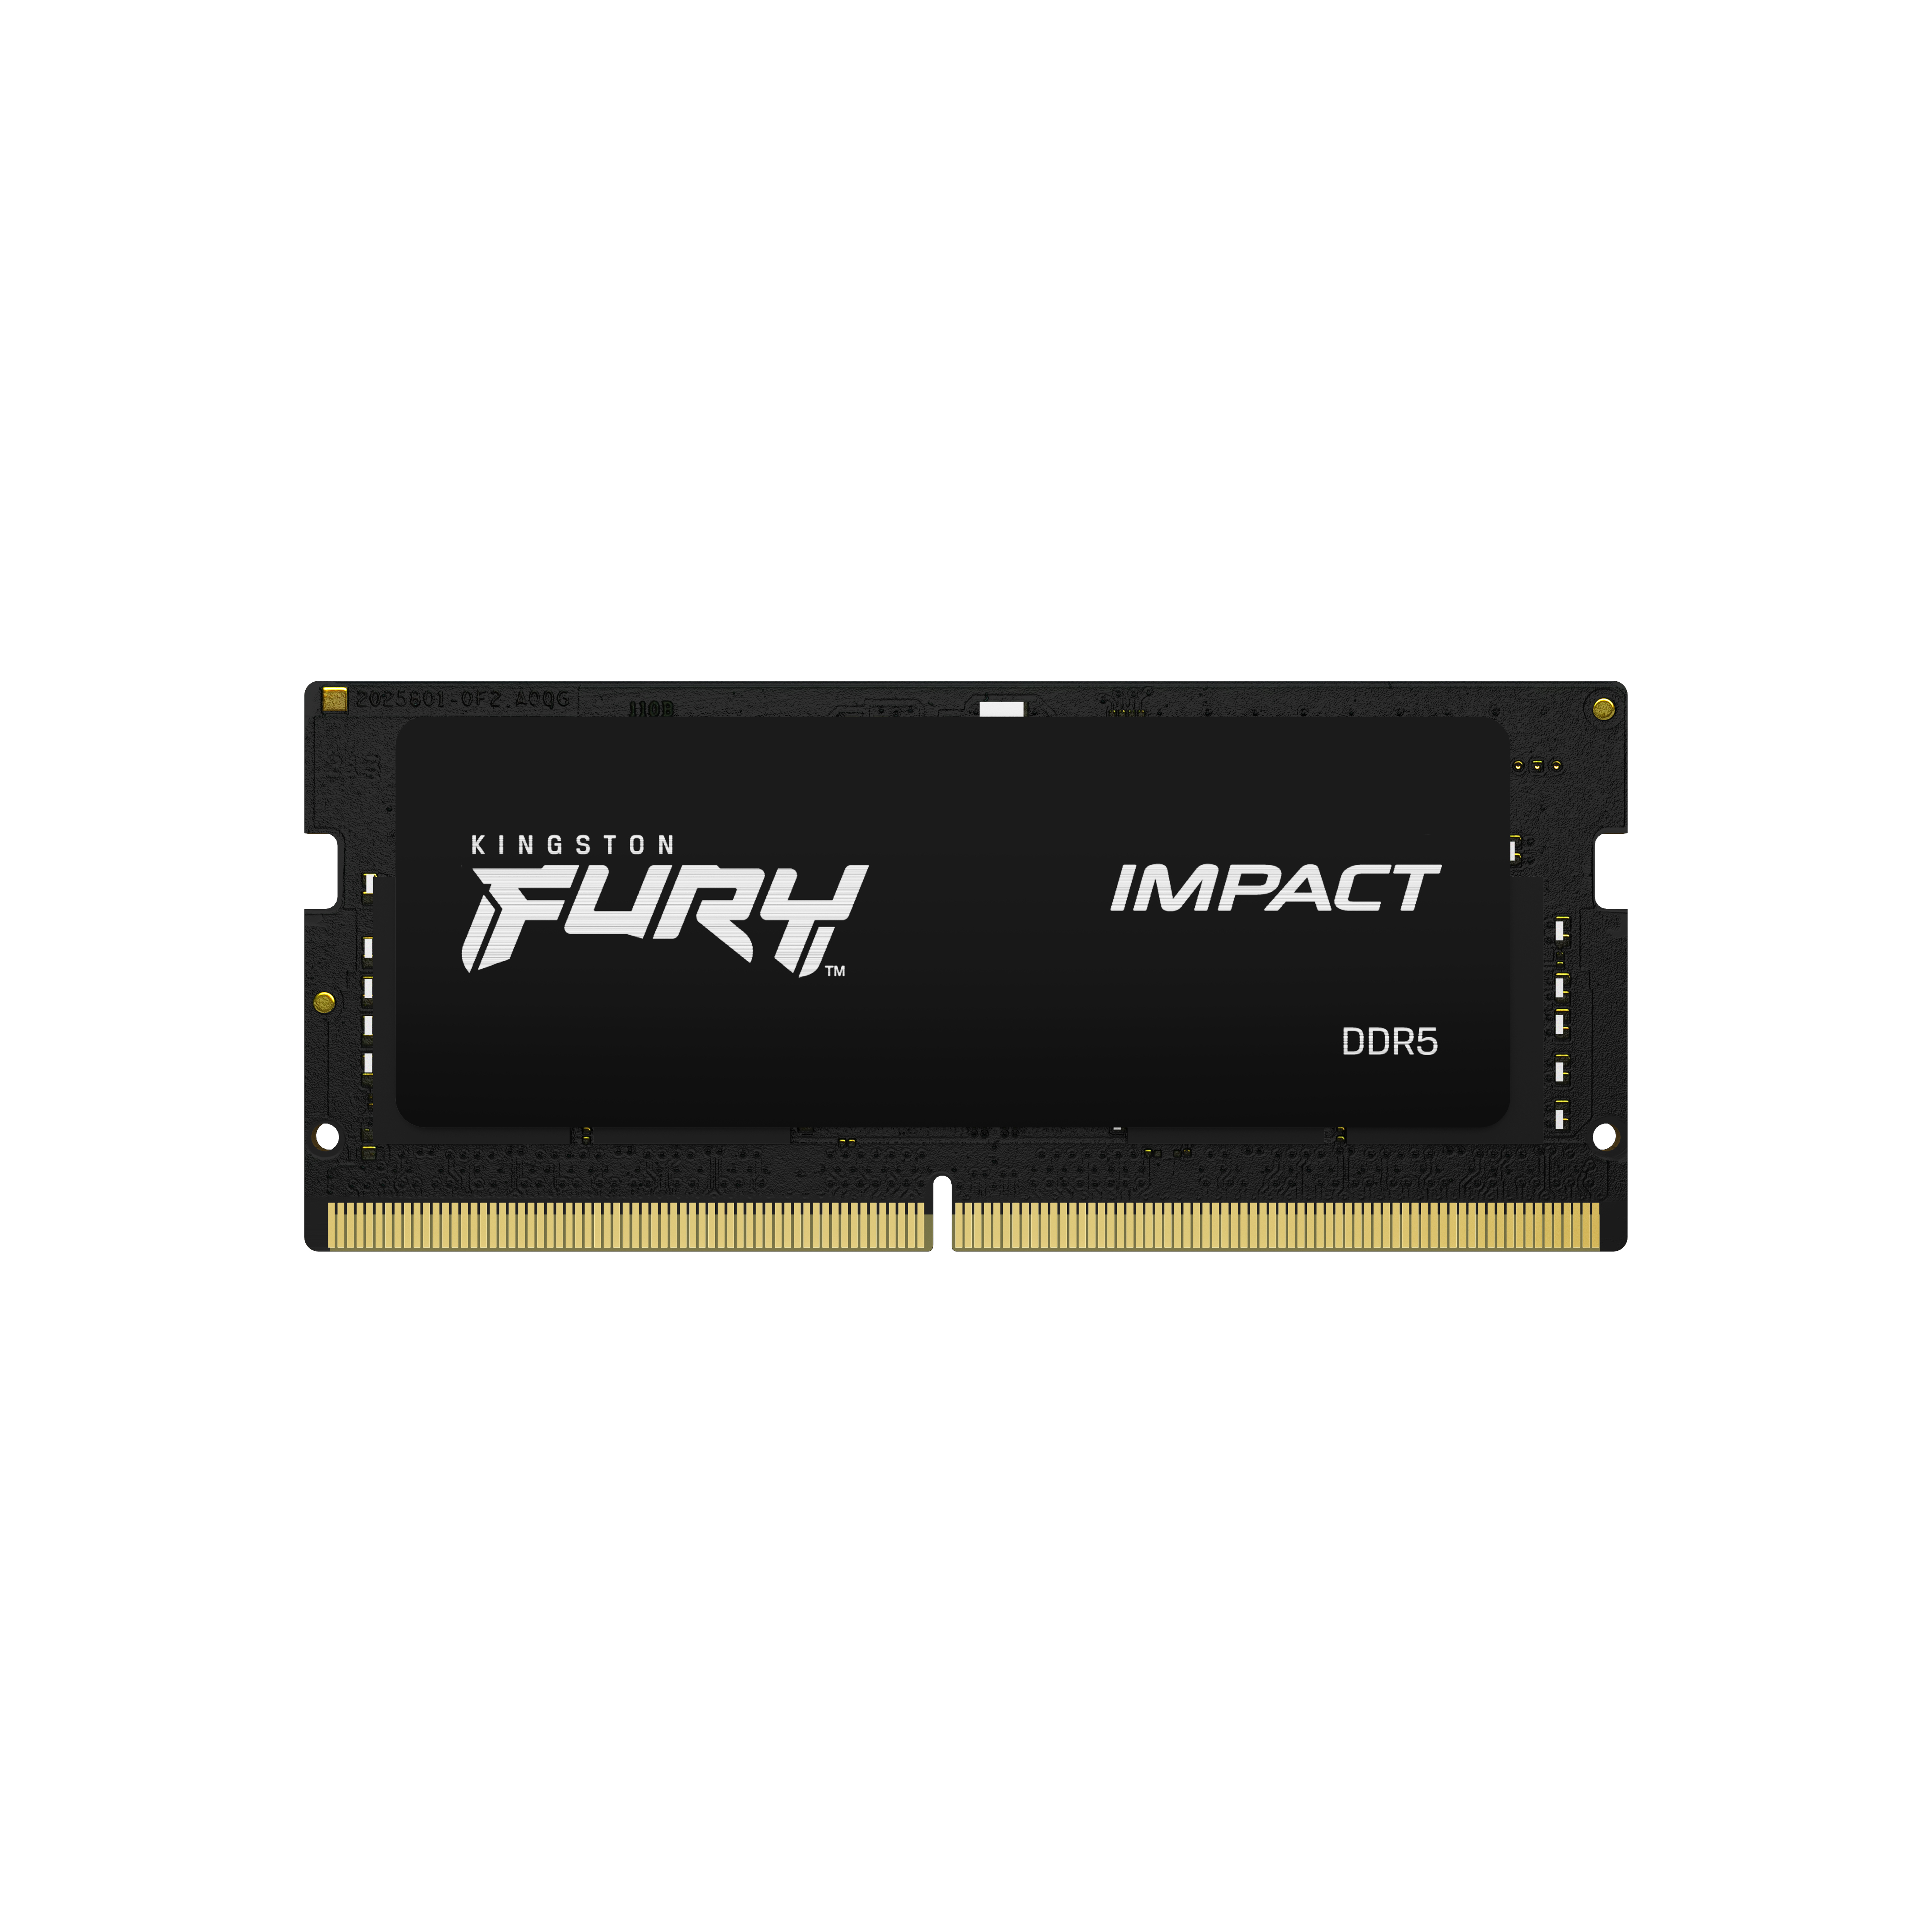 KINGSTON FURY Impact 64GB